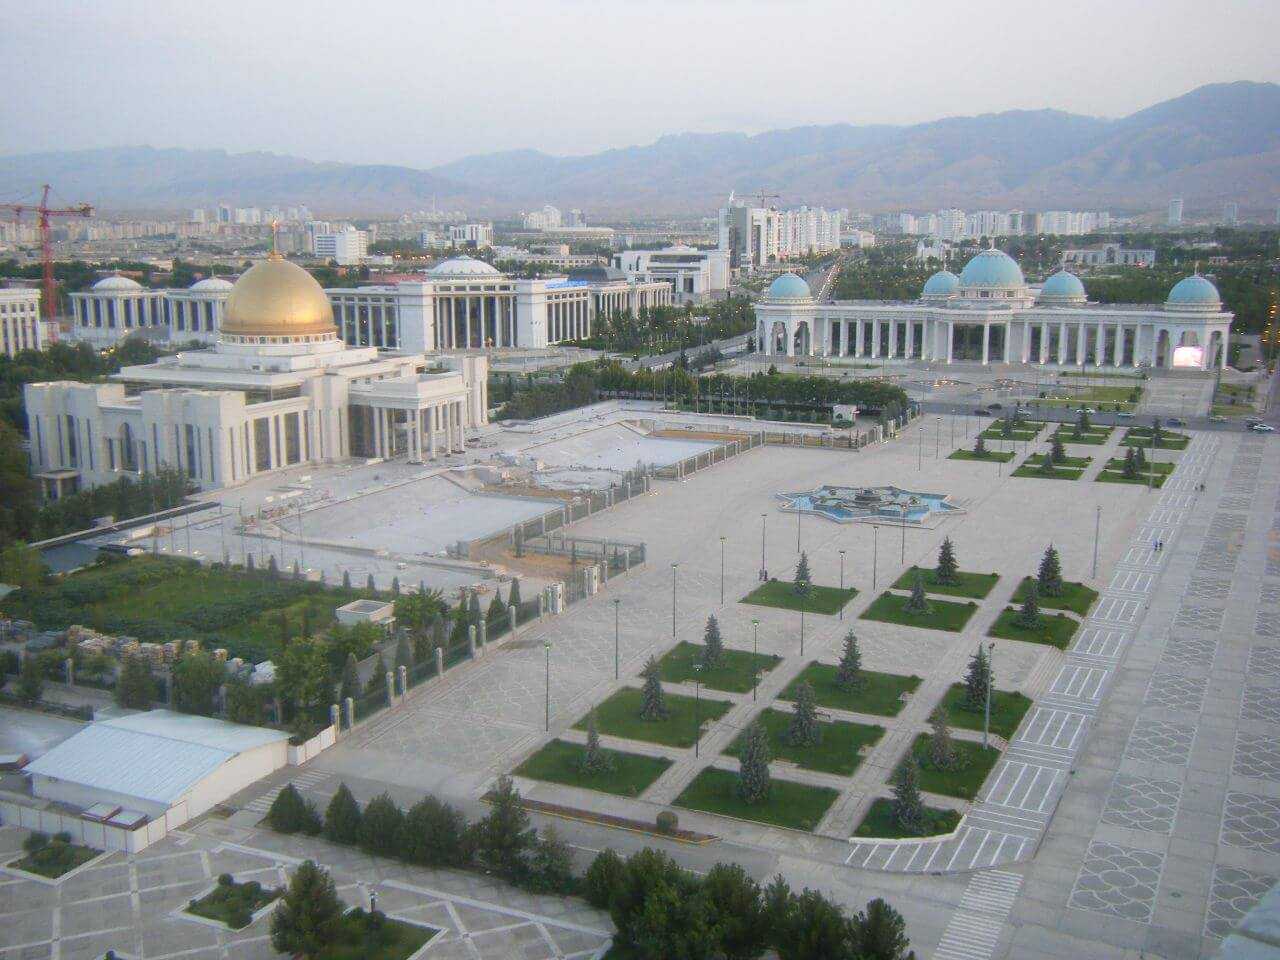 Turkmenistan Drone Laws